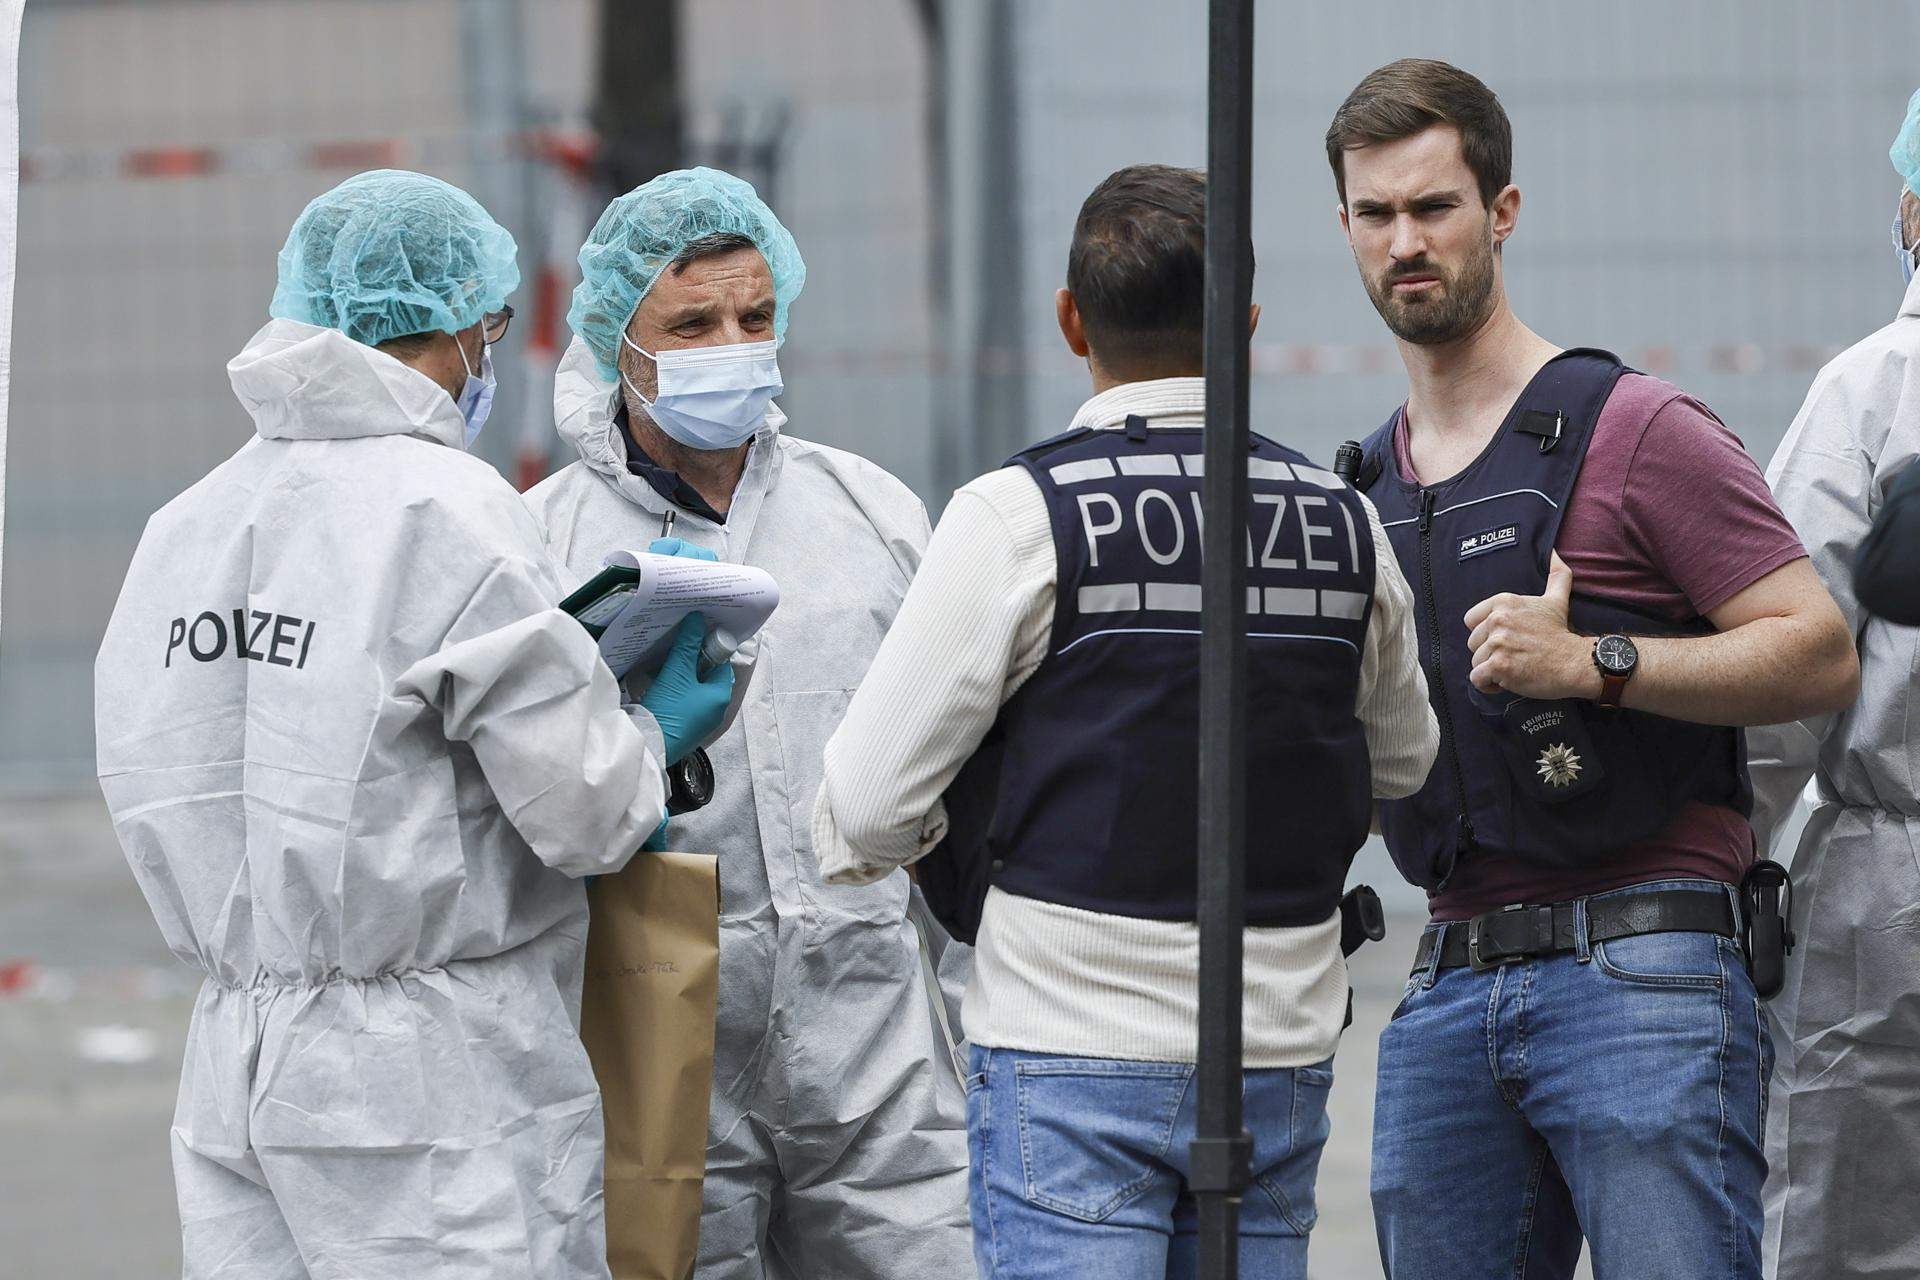 Mor el policia apunyalat divendres en un atac a Alemanya